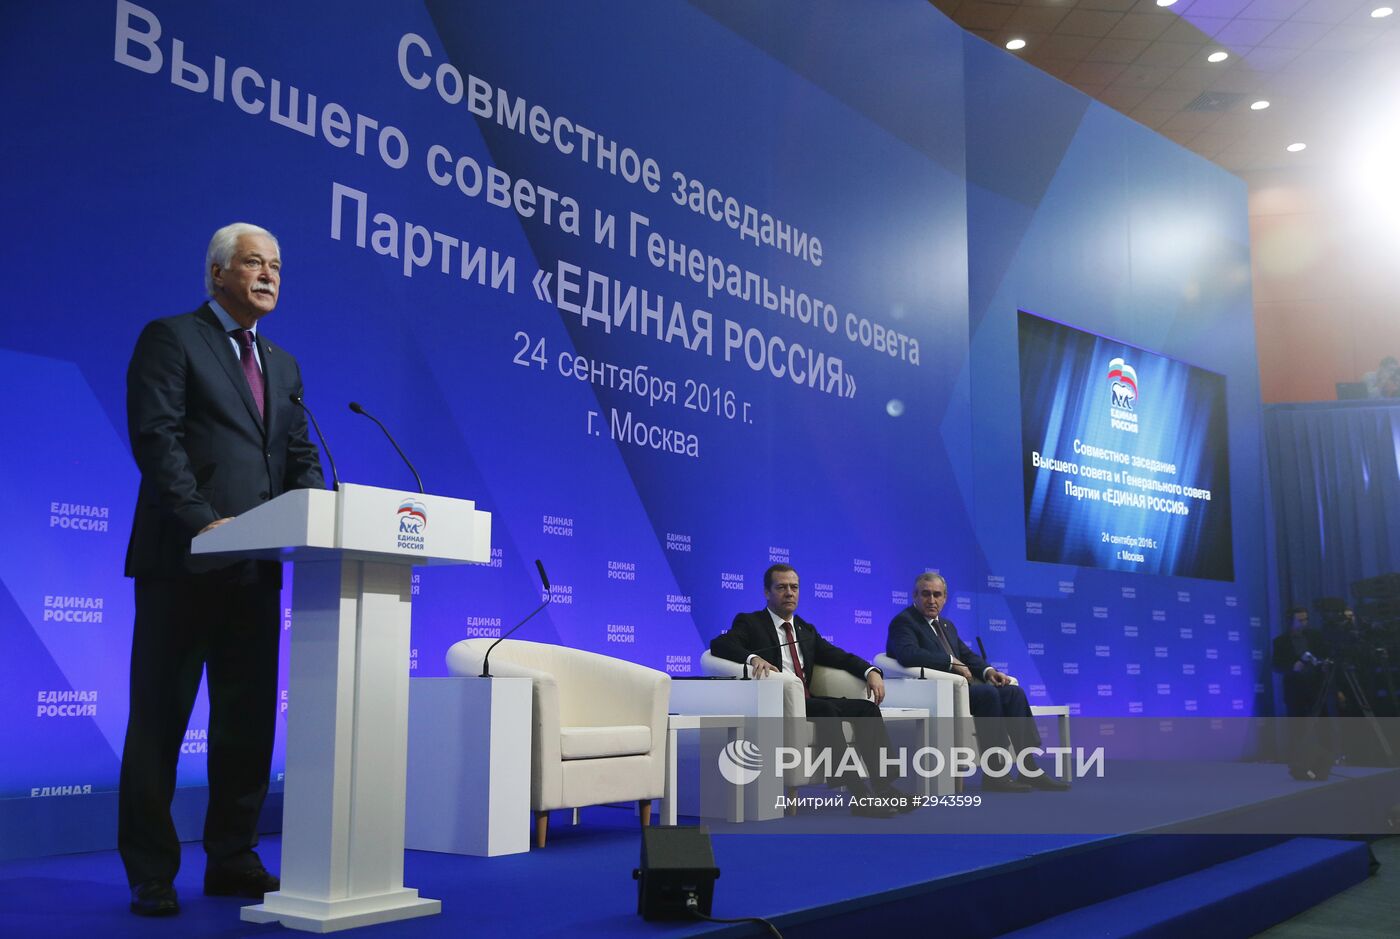 Премьер-министр РФ Д. Медведев принял участие в совместном заседании высшего совета и генерального совета "Единой России"